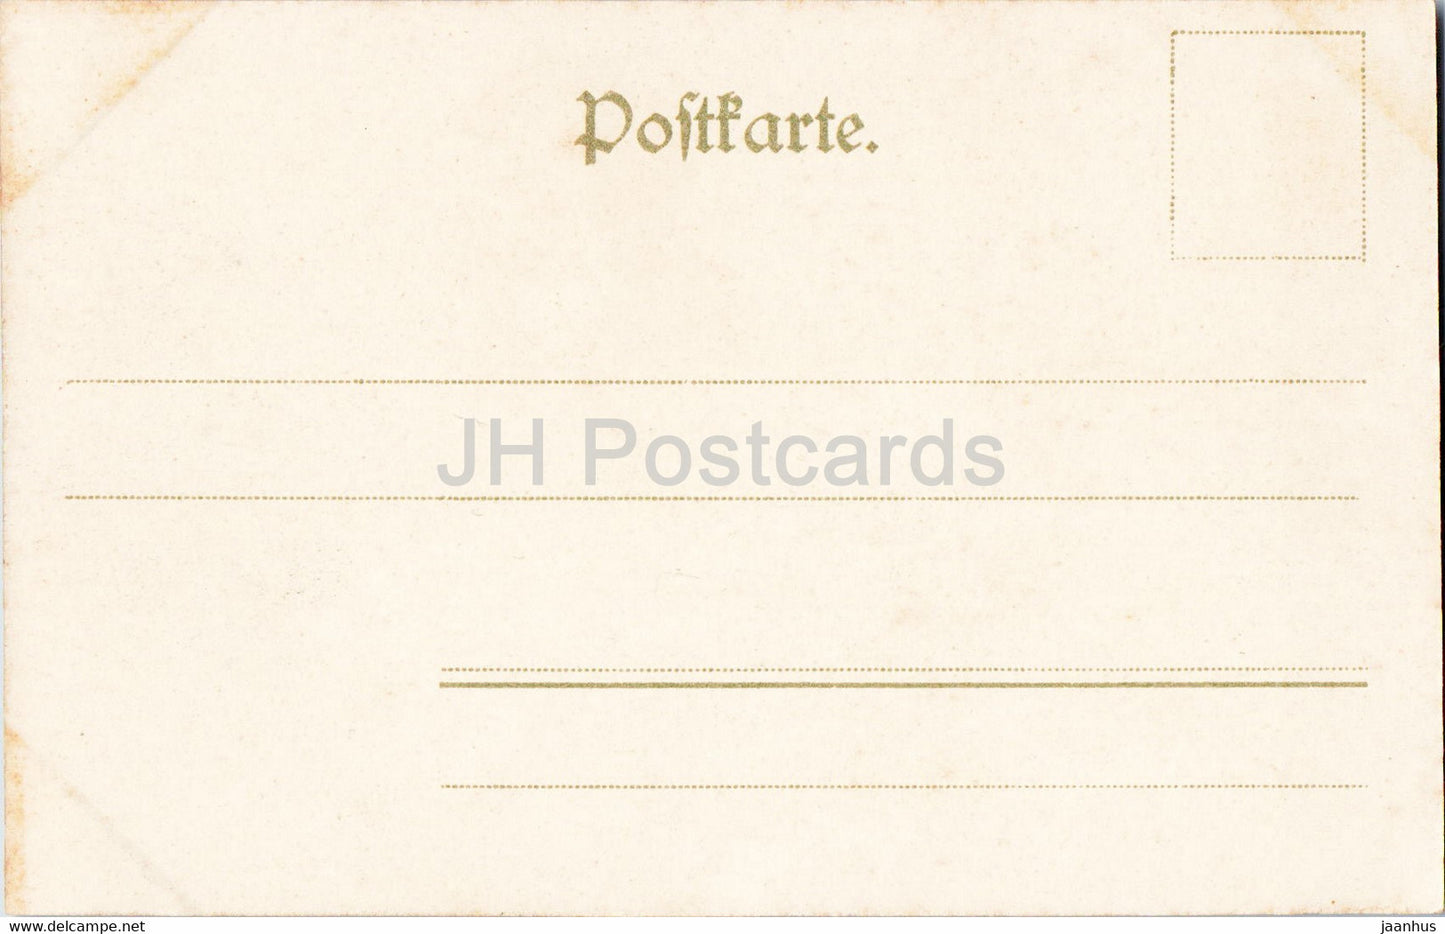 Wehlen a Elbe - Sachs Schweiz - 319 - old postcard - Germany - unused